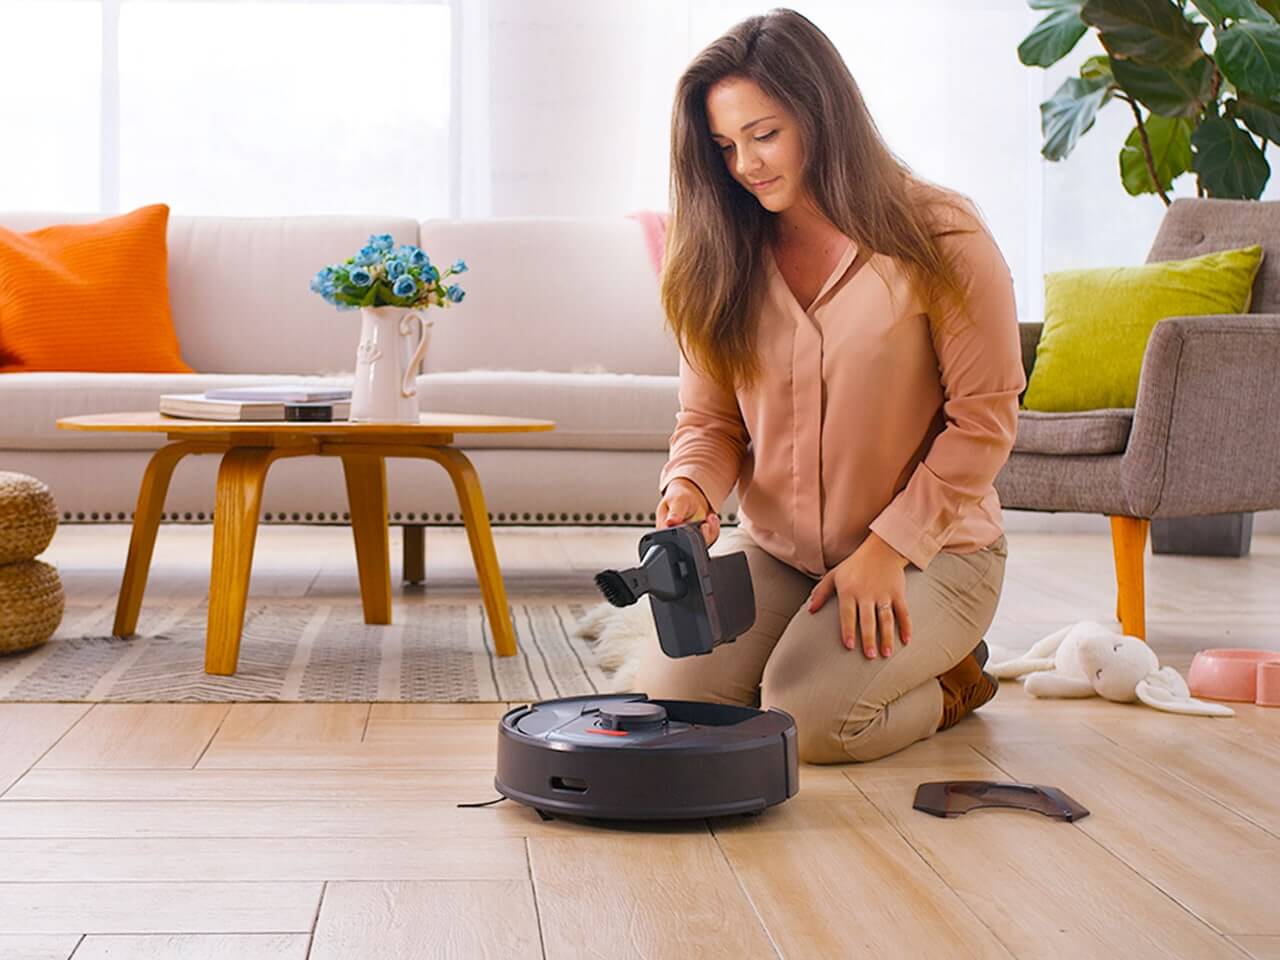 Робот пылесос Tab Smart Vacuum Cleaner. Робот пылесос Клиан робот. Пылесос в интерьере. Женщина и робот пылесос.